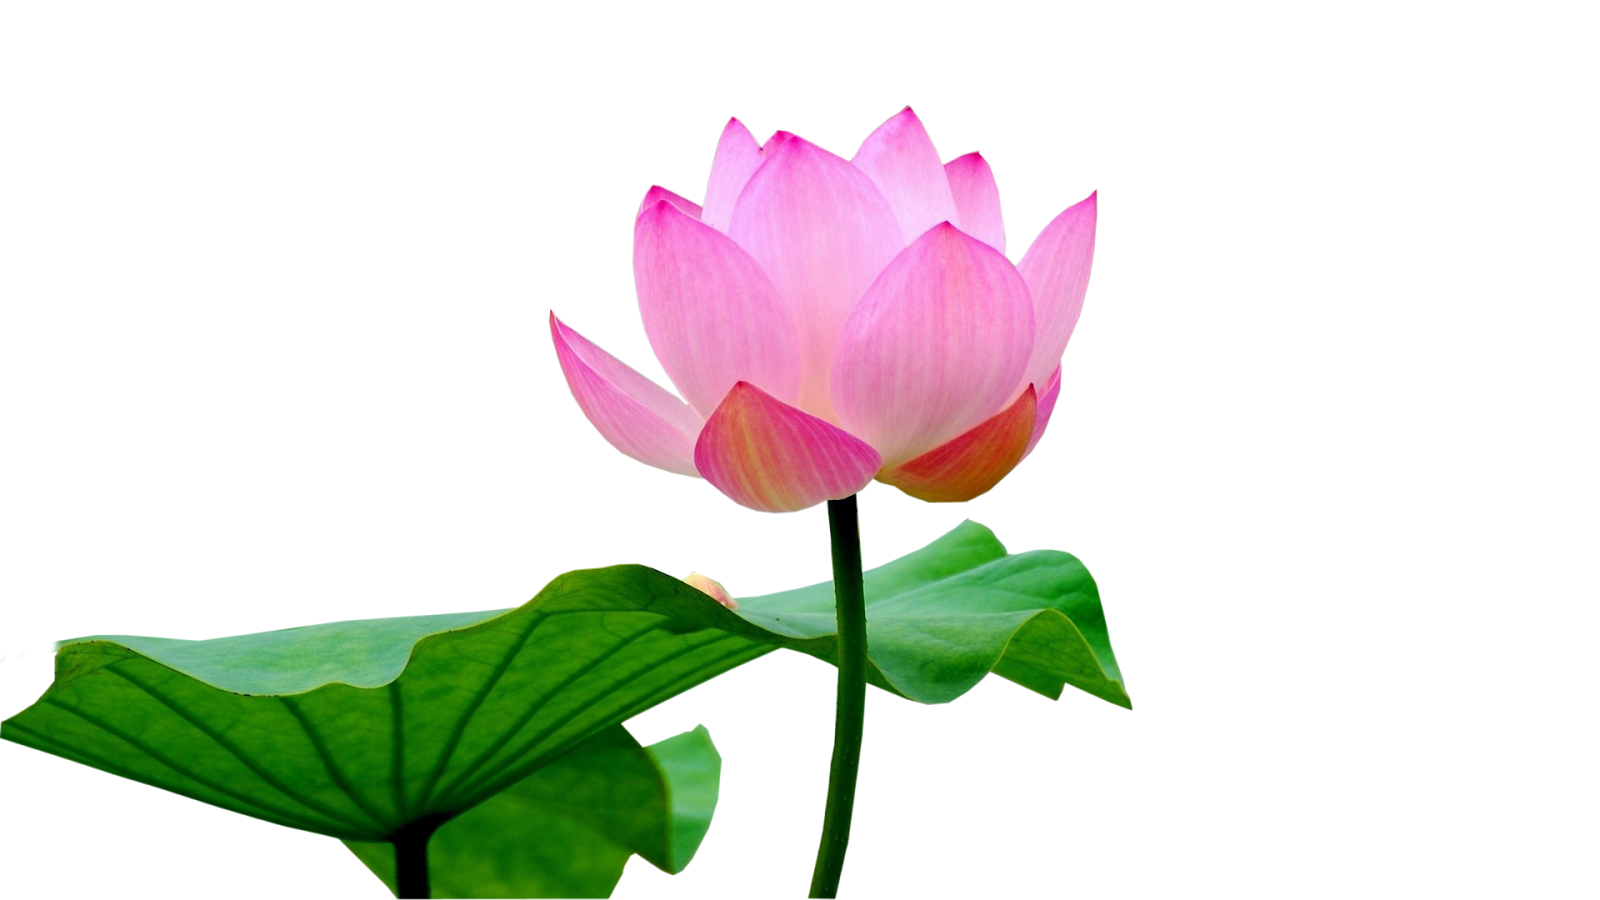 Lotus, lotus